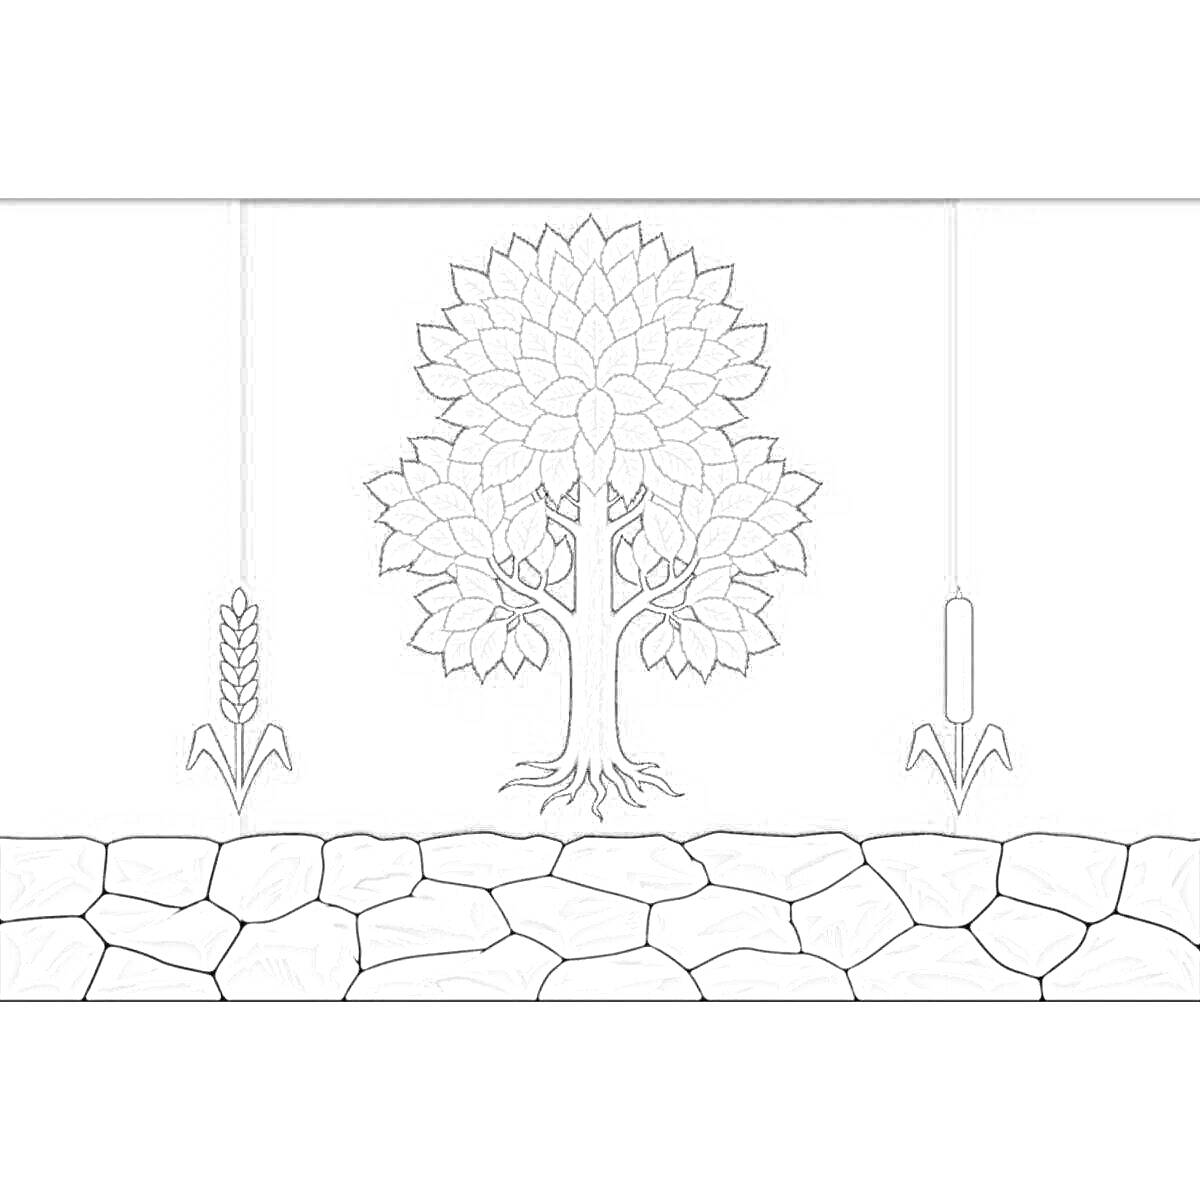 Раскраска Герб Кузбасса с деревом в центре, колосом пшеницы слева и тростником справа, на фоне каменной кладки